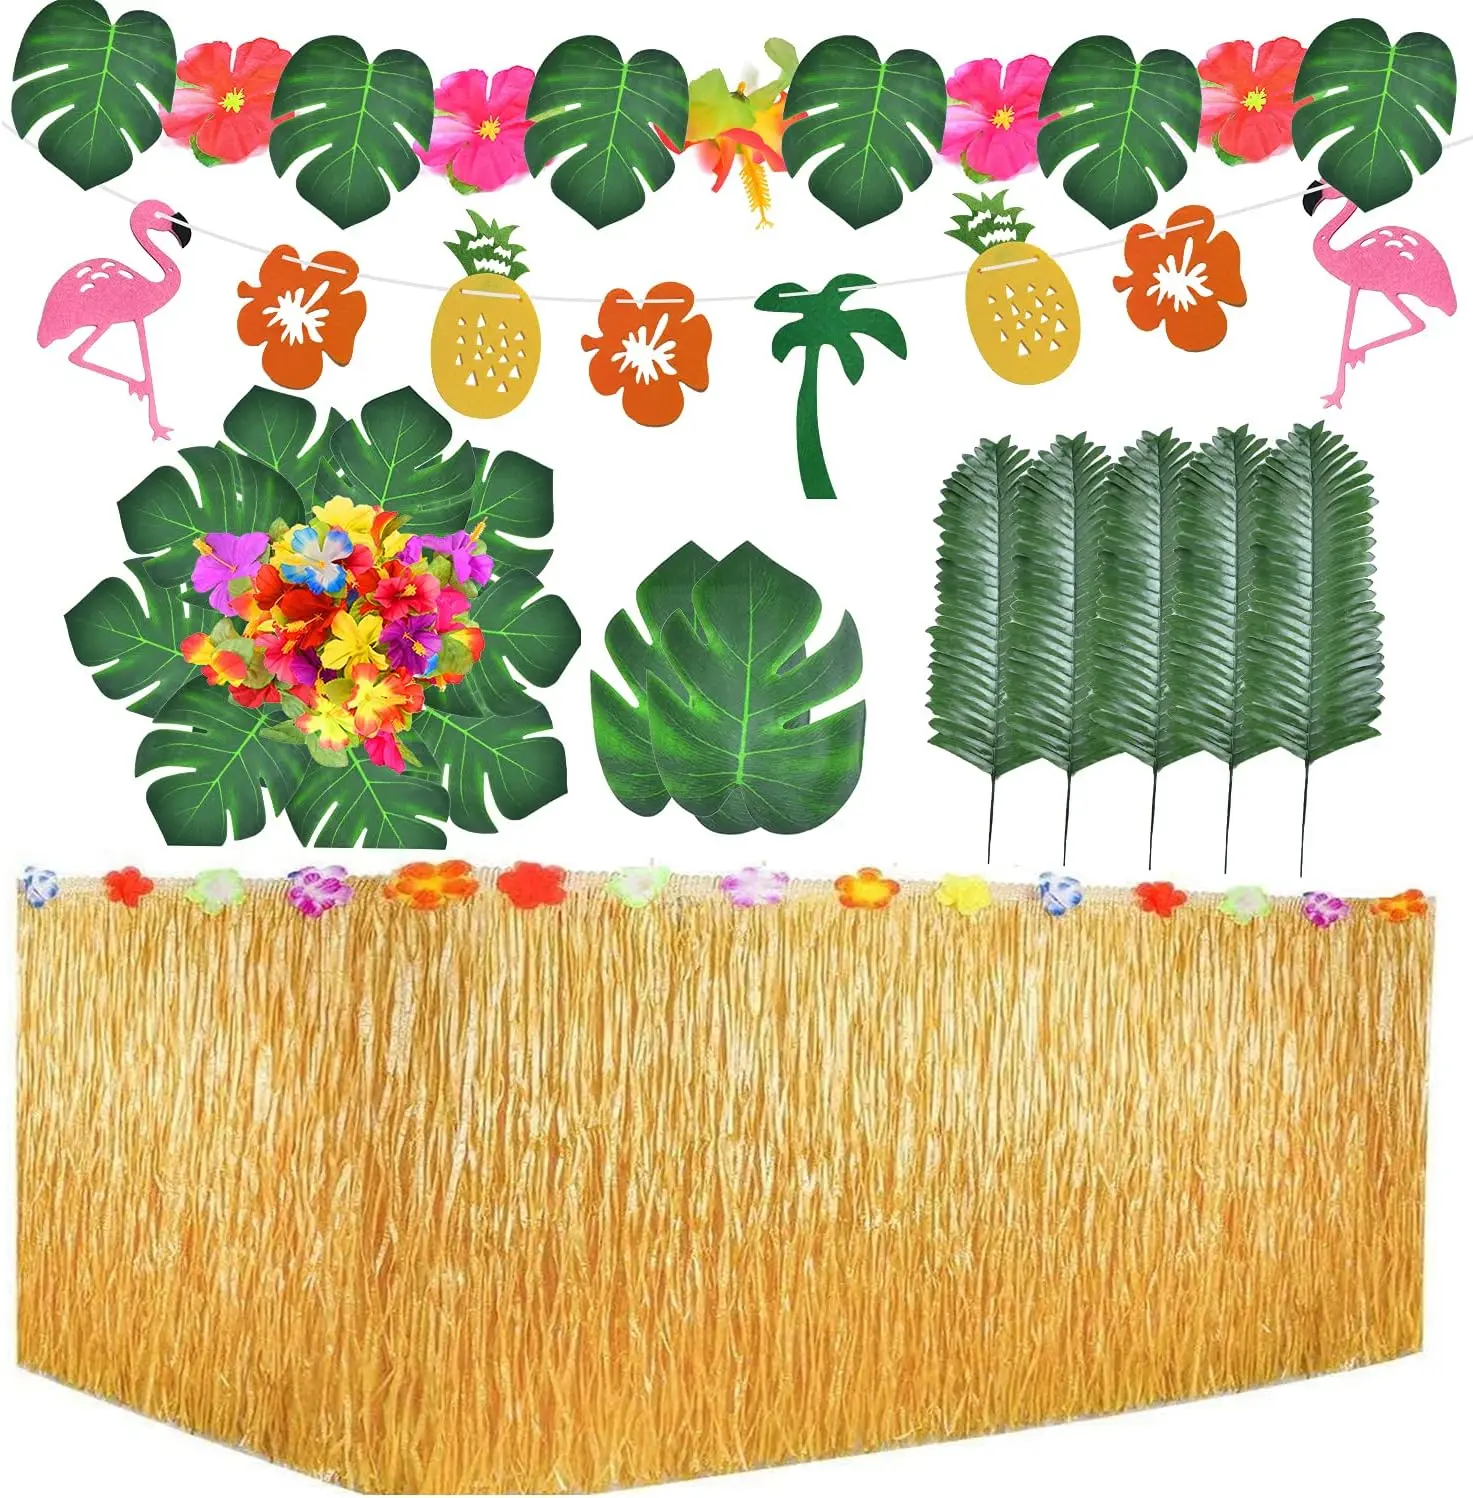 

Набор тропических Гавайских фотографий, включая одну юбку для стола 9ft Luau, 25 тропических листьев пальмы, 10 цветов гибискуса